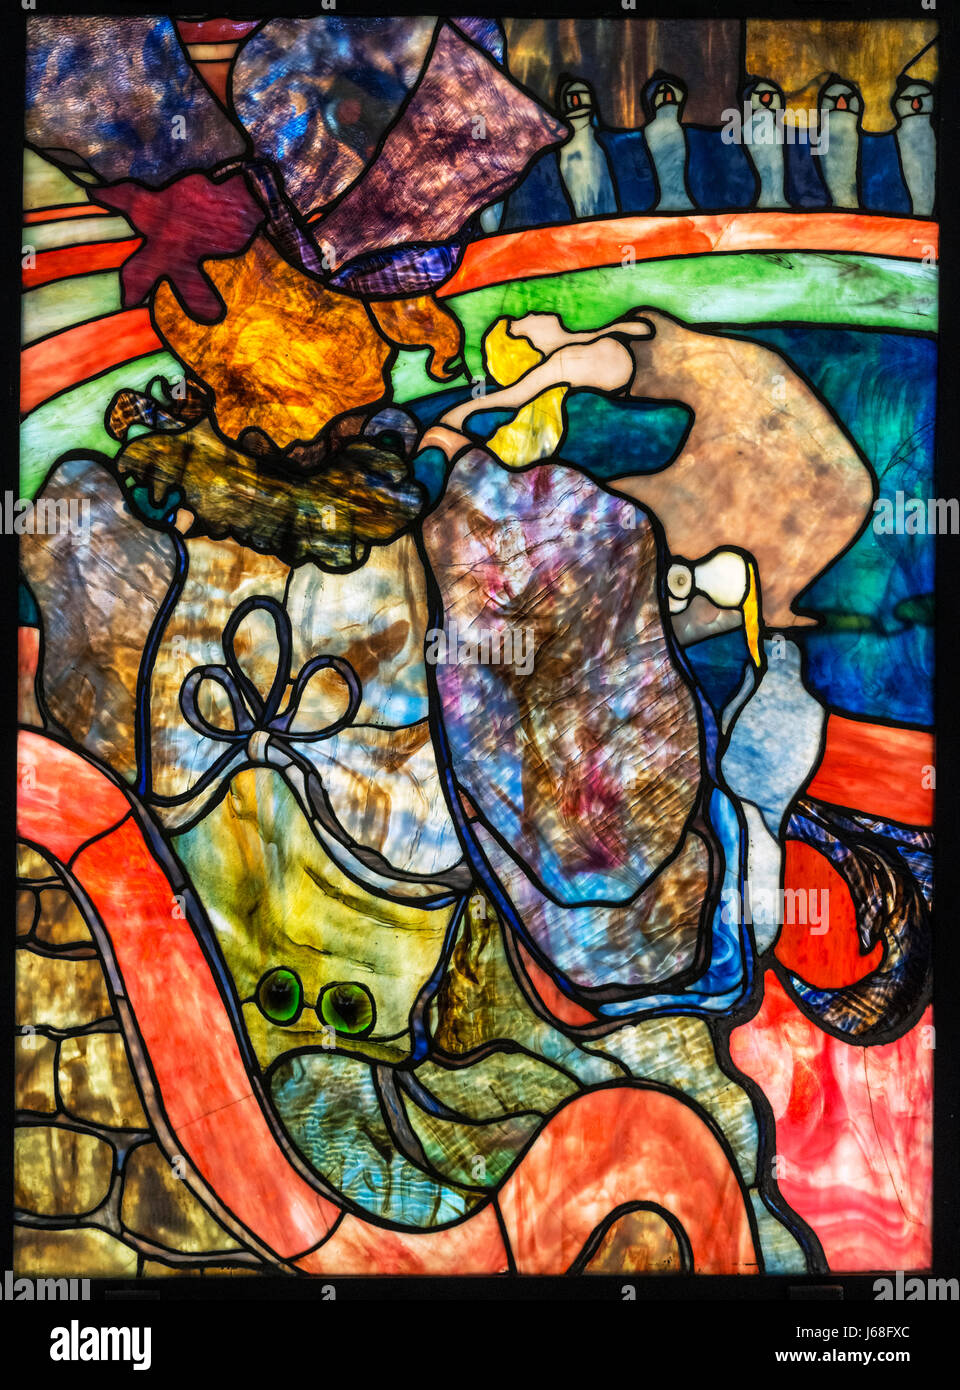 Toulouse-Lautrec et Louis Comfort Tiffany. Vitrail intitulé 'au Nouveau Cirque, Papa Chrysanthème' (au nouveau cirque, Papa Chrysanthème) par Henri de Toulouse-Lautrec (1864-1901), avec des vitraux de Louis Comfort Tiffany (1848-1933), c.1894 Banque D'Images